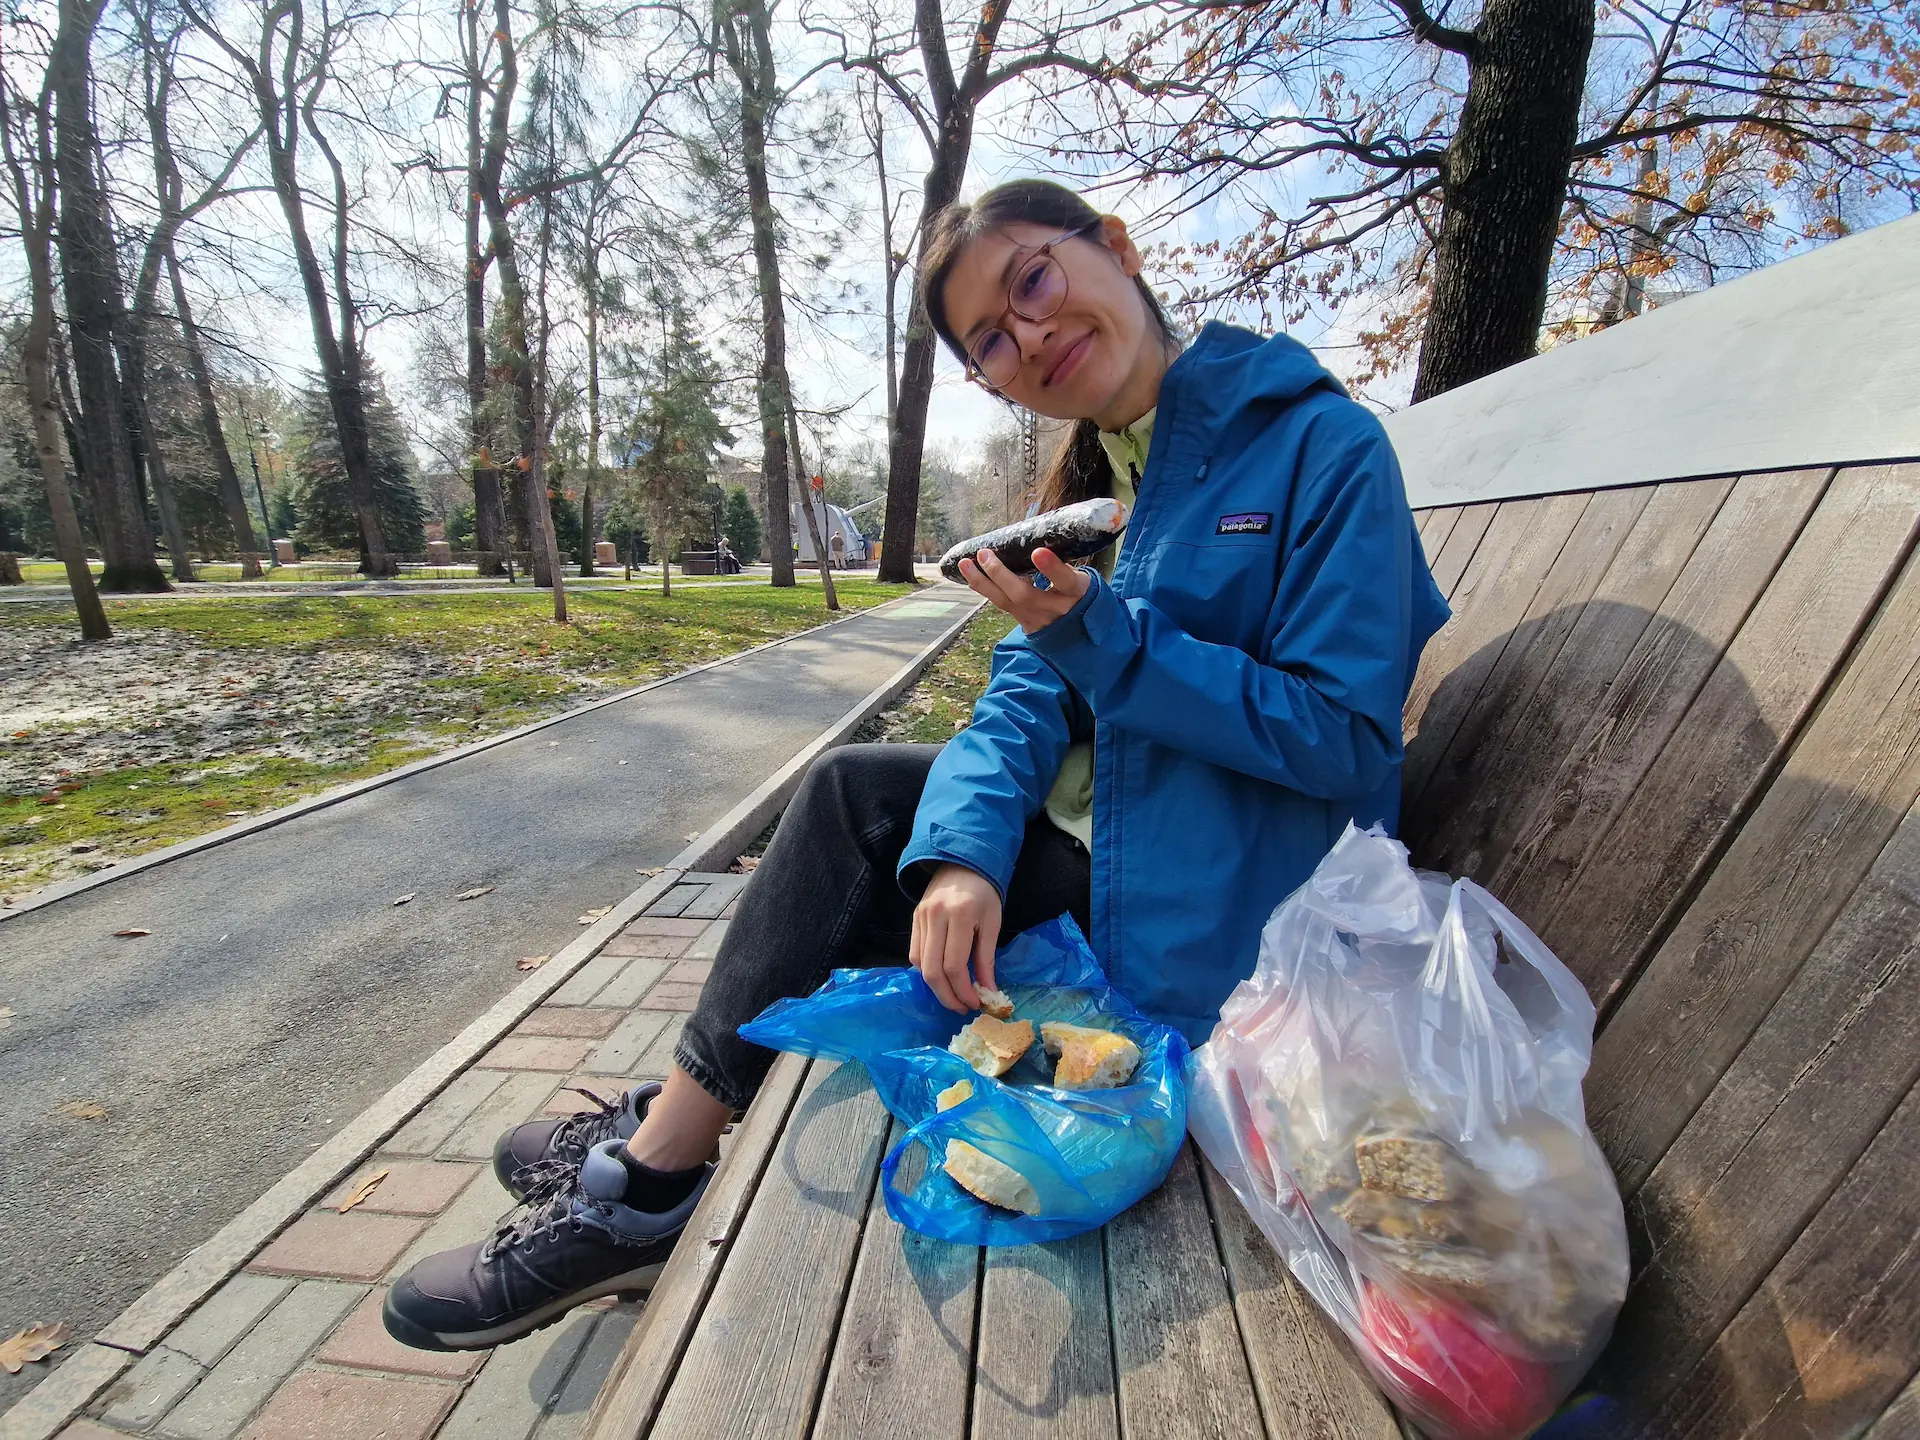 Sur un banc dans un parc, Clara montre un rouleau de gimbap coréen